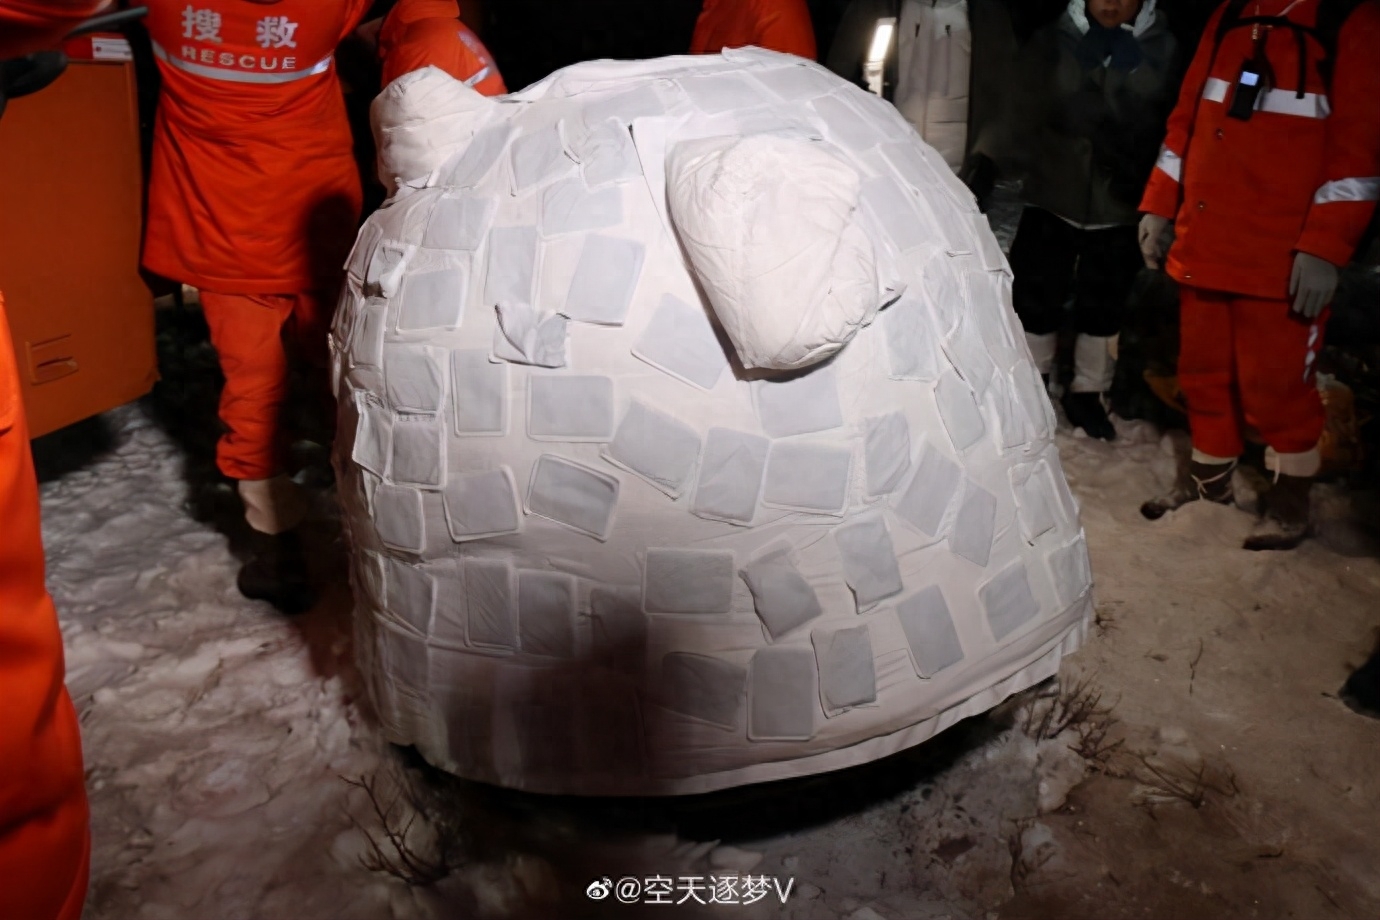 嫦娥五号穿了两层棉衣还贴满了暖宝宝 网友: 不能冻到我们的“快递员”!